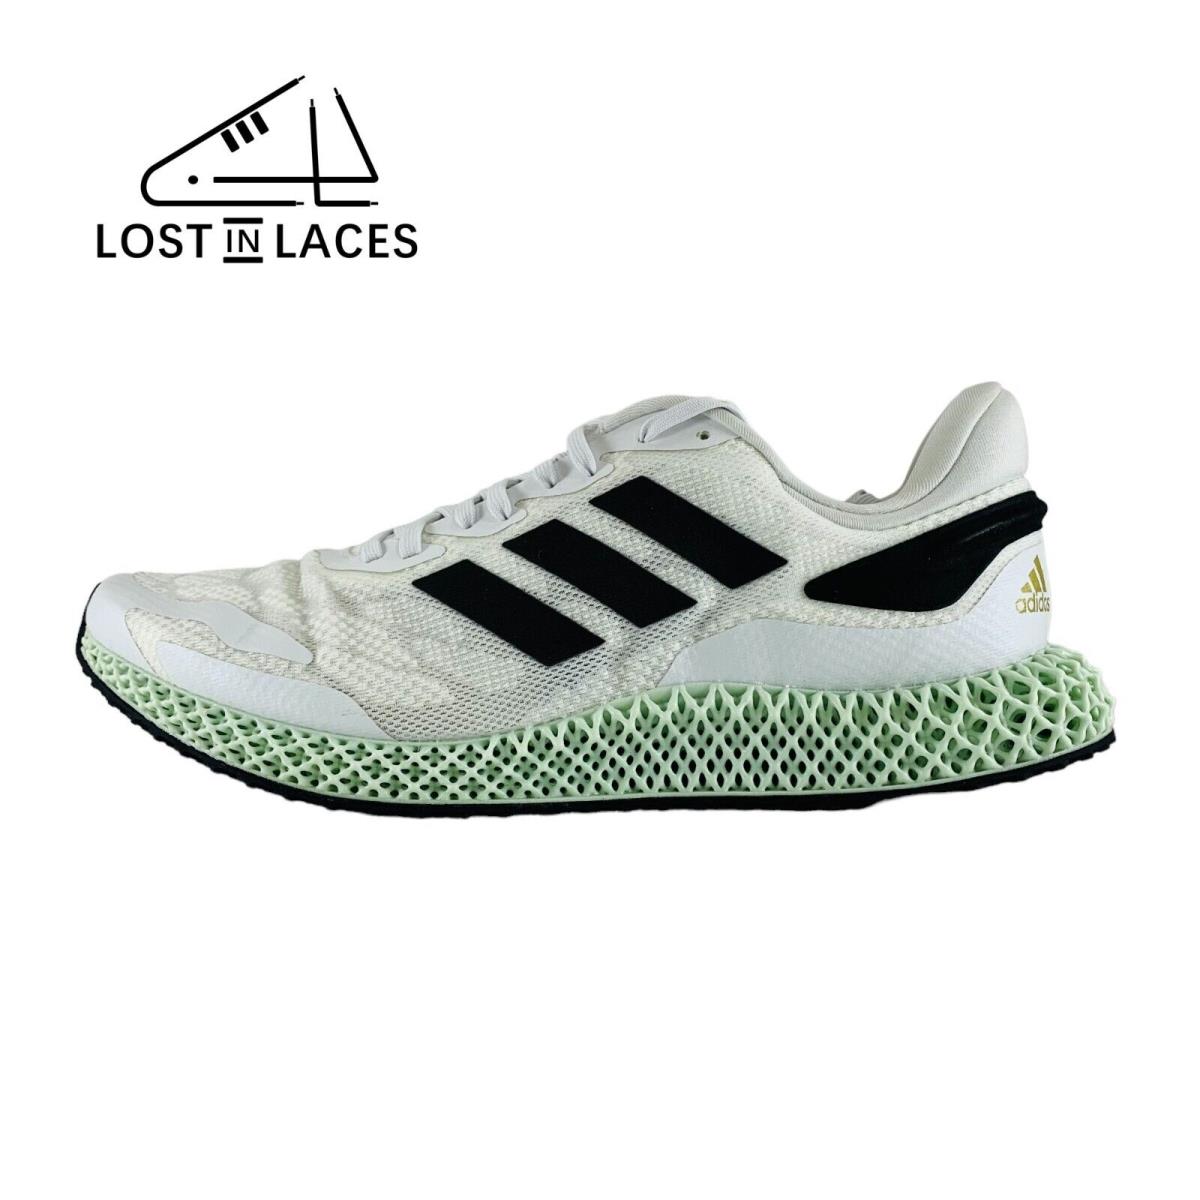 Adidas 4D Runner 1.0 White Black Sneakers Running Shoes EG6264 Men`s Sizes - White